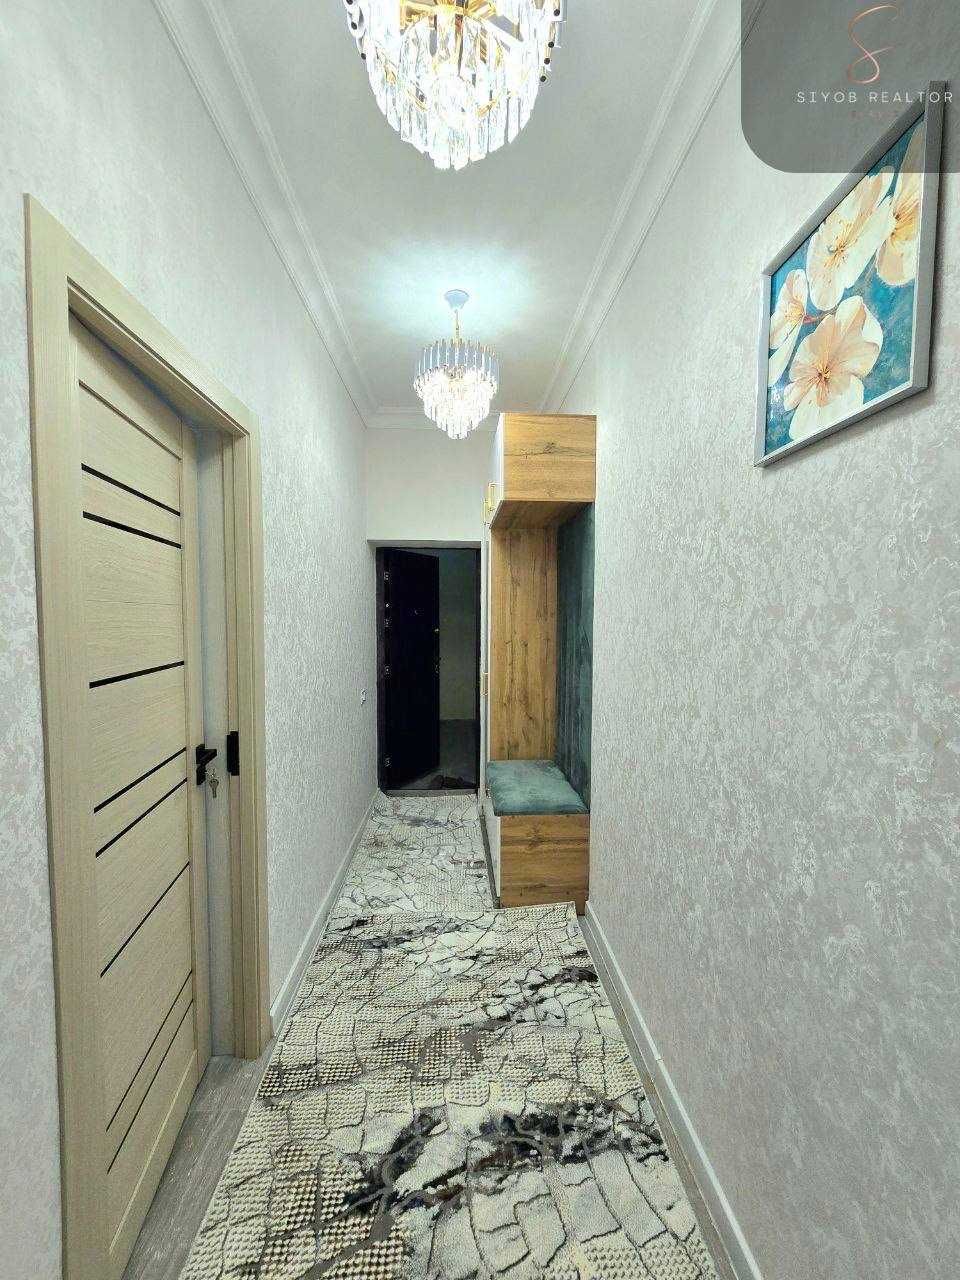 №2763.Продается 3х-комнатная квартира в Новостройке.